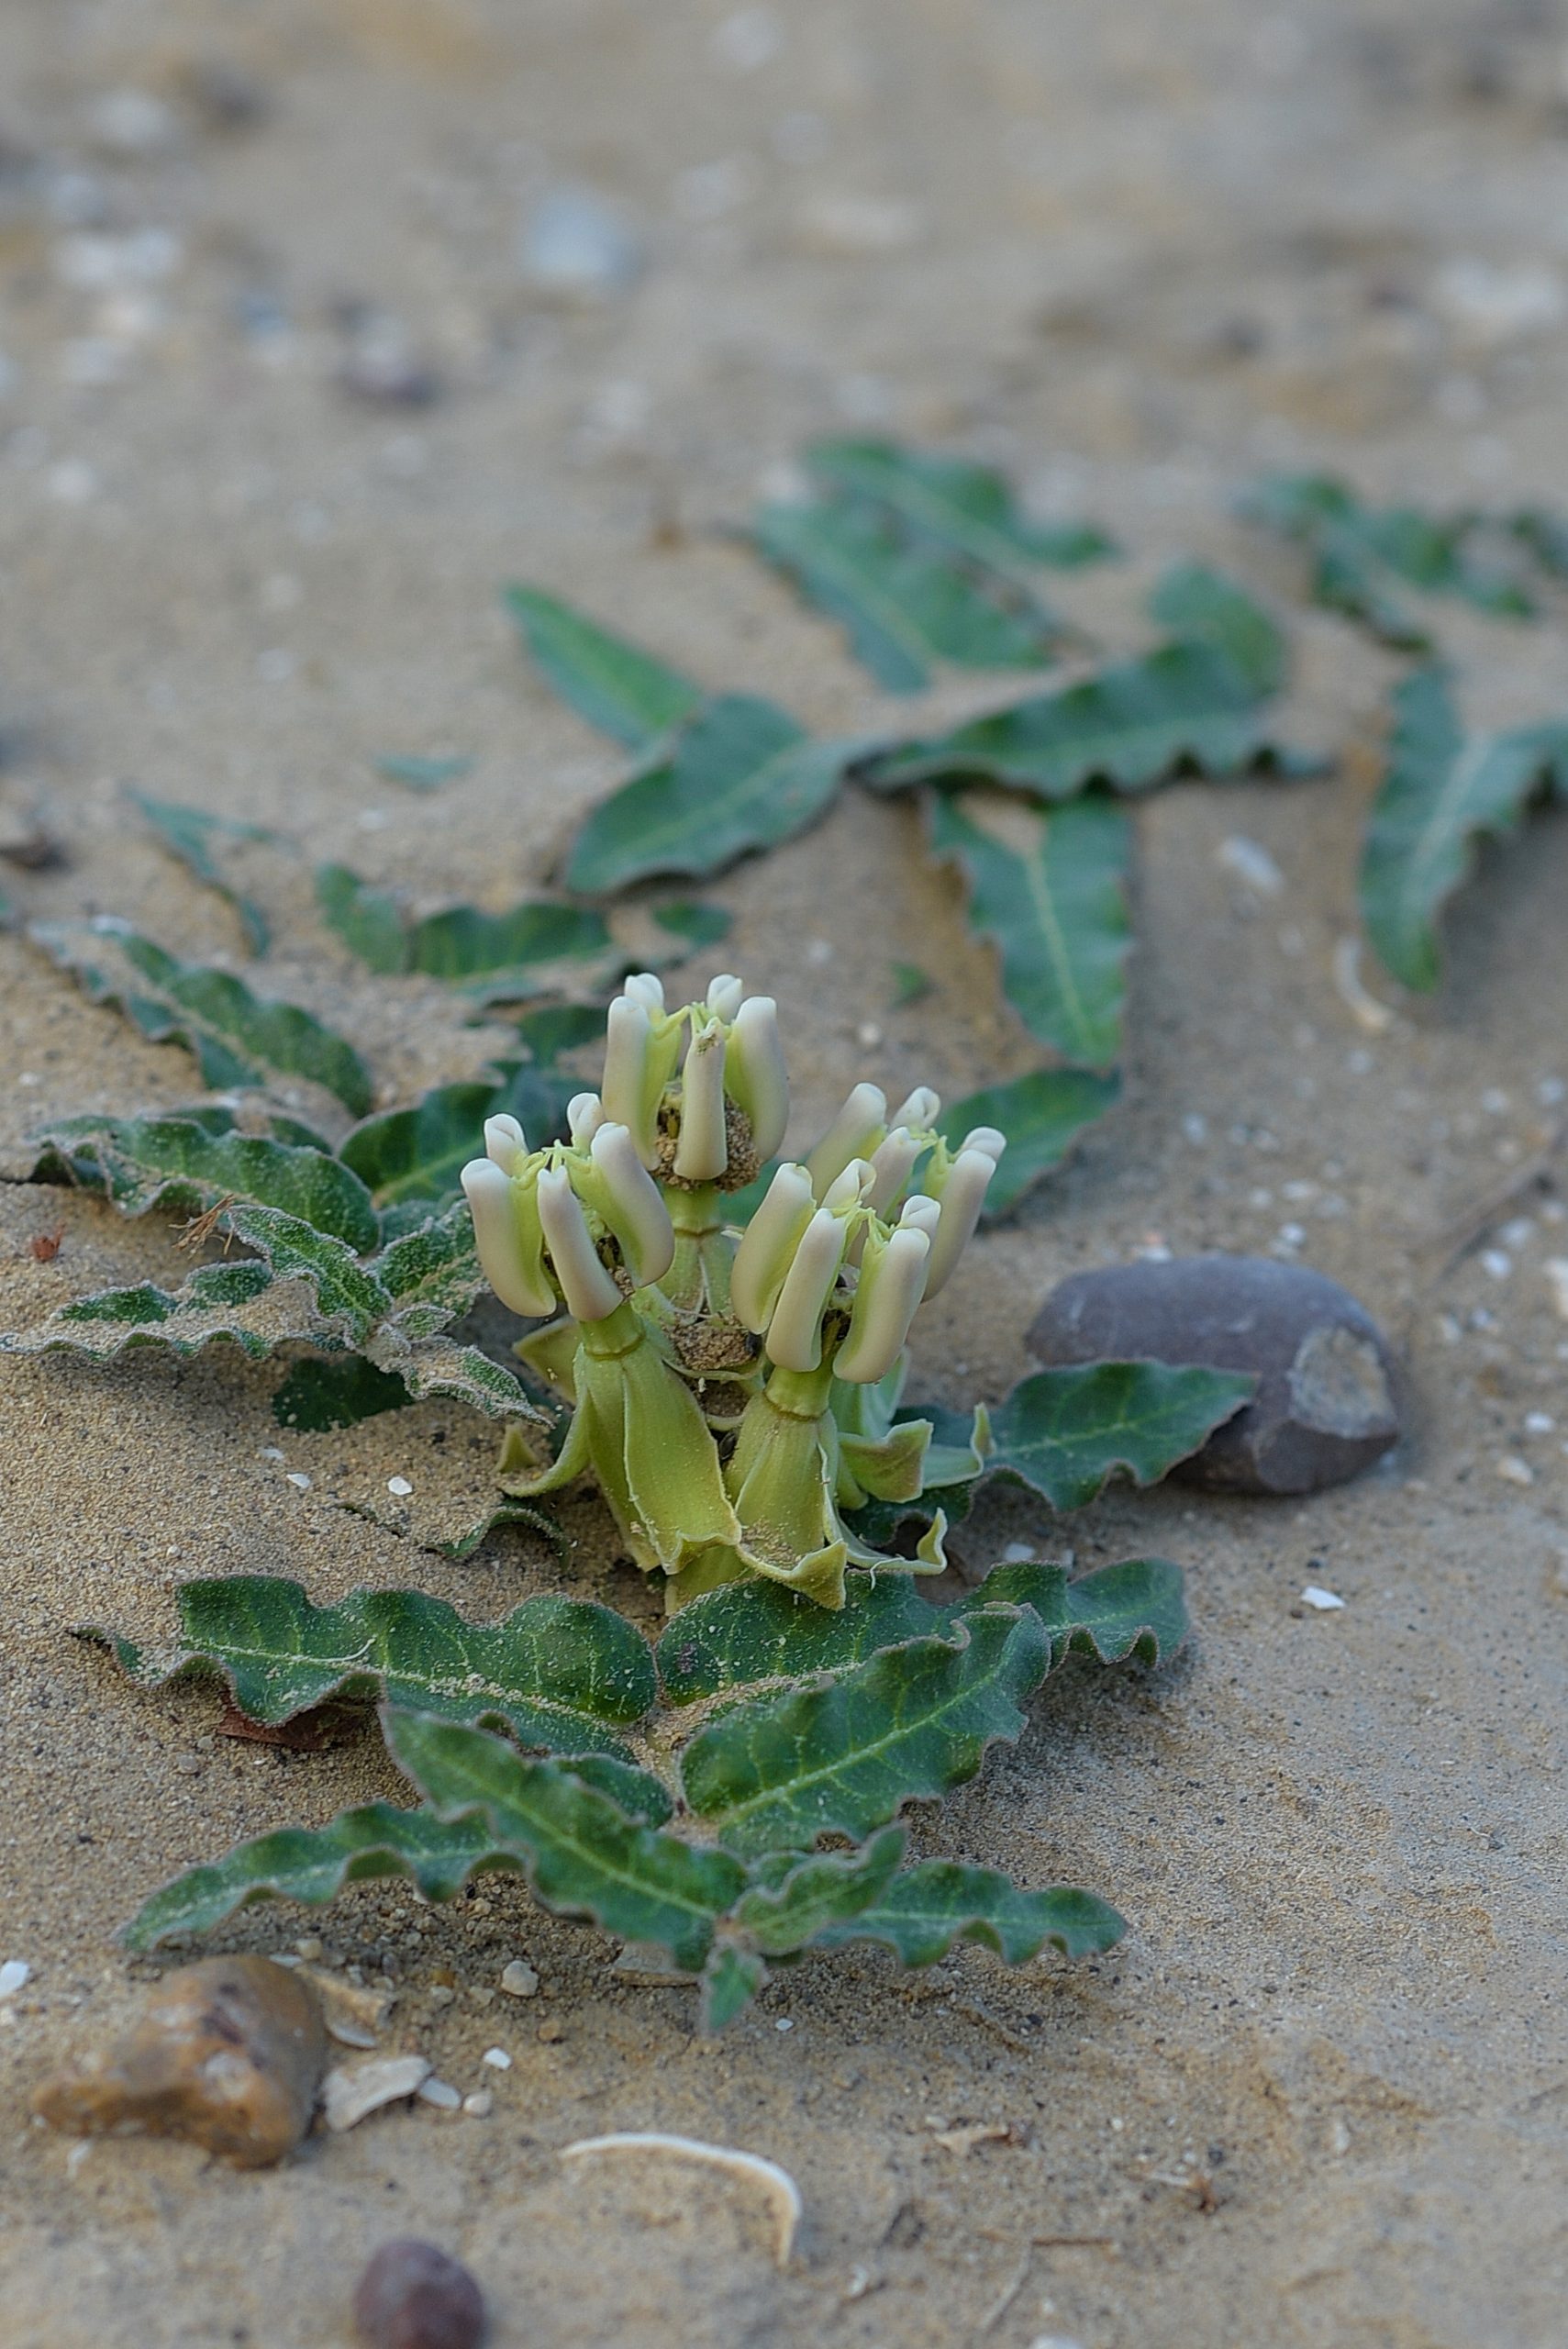 Prostrate Milkweed (Asclepias prostrata)